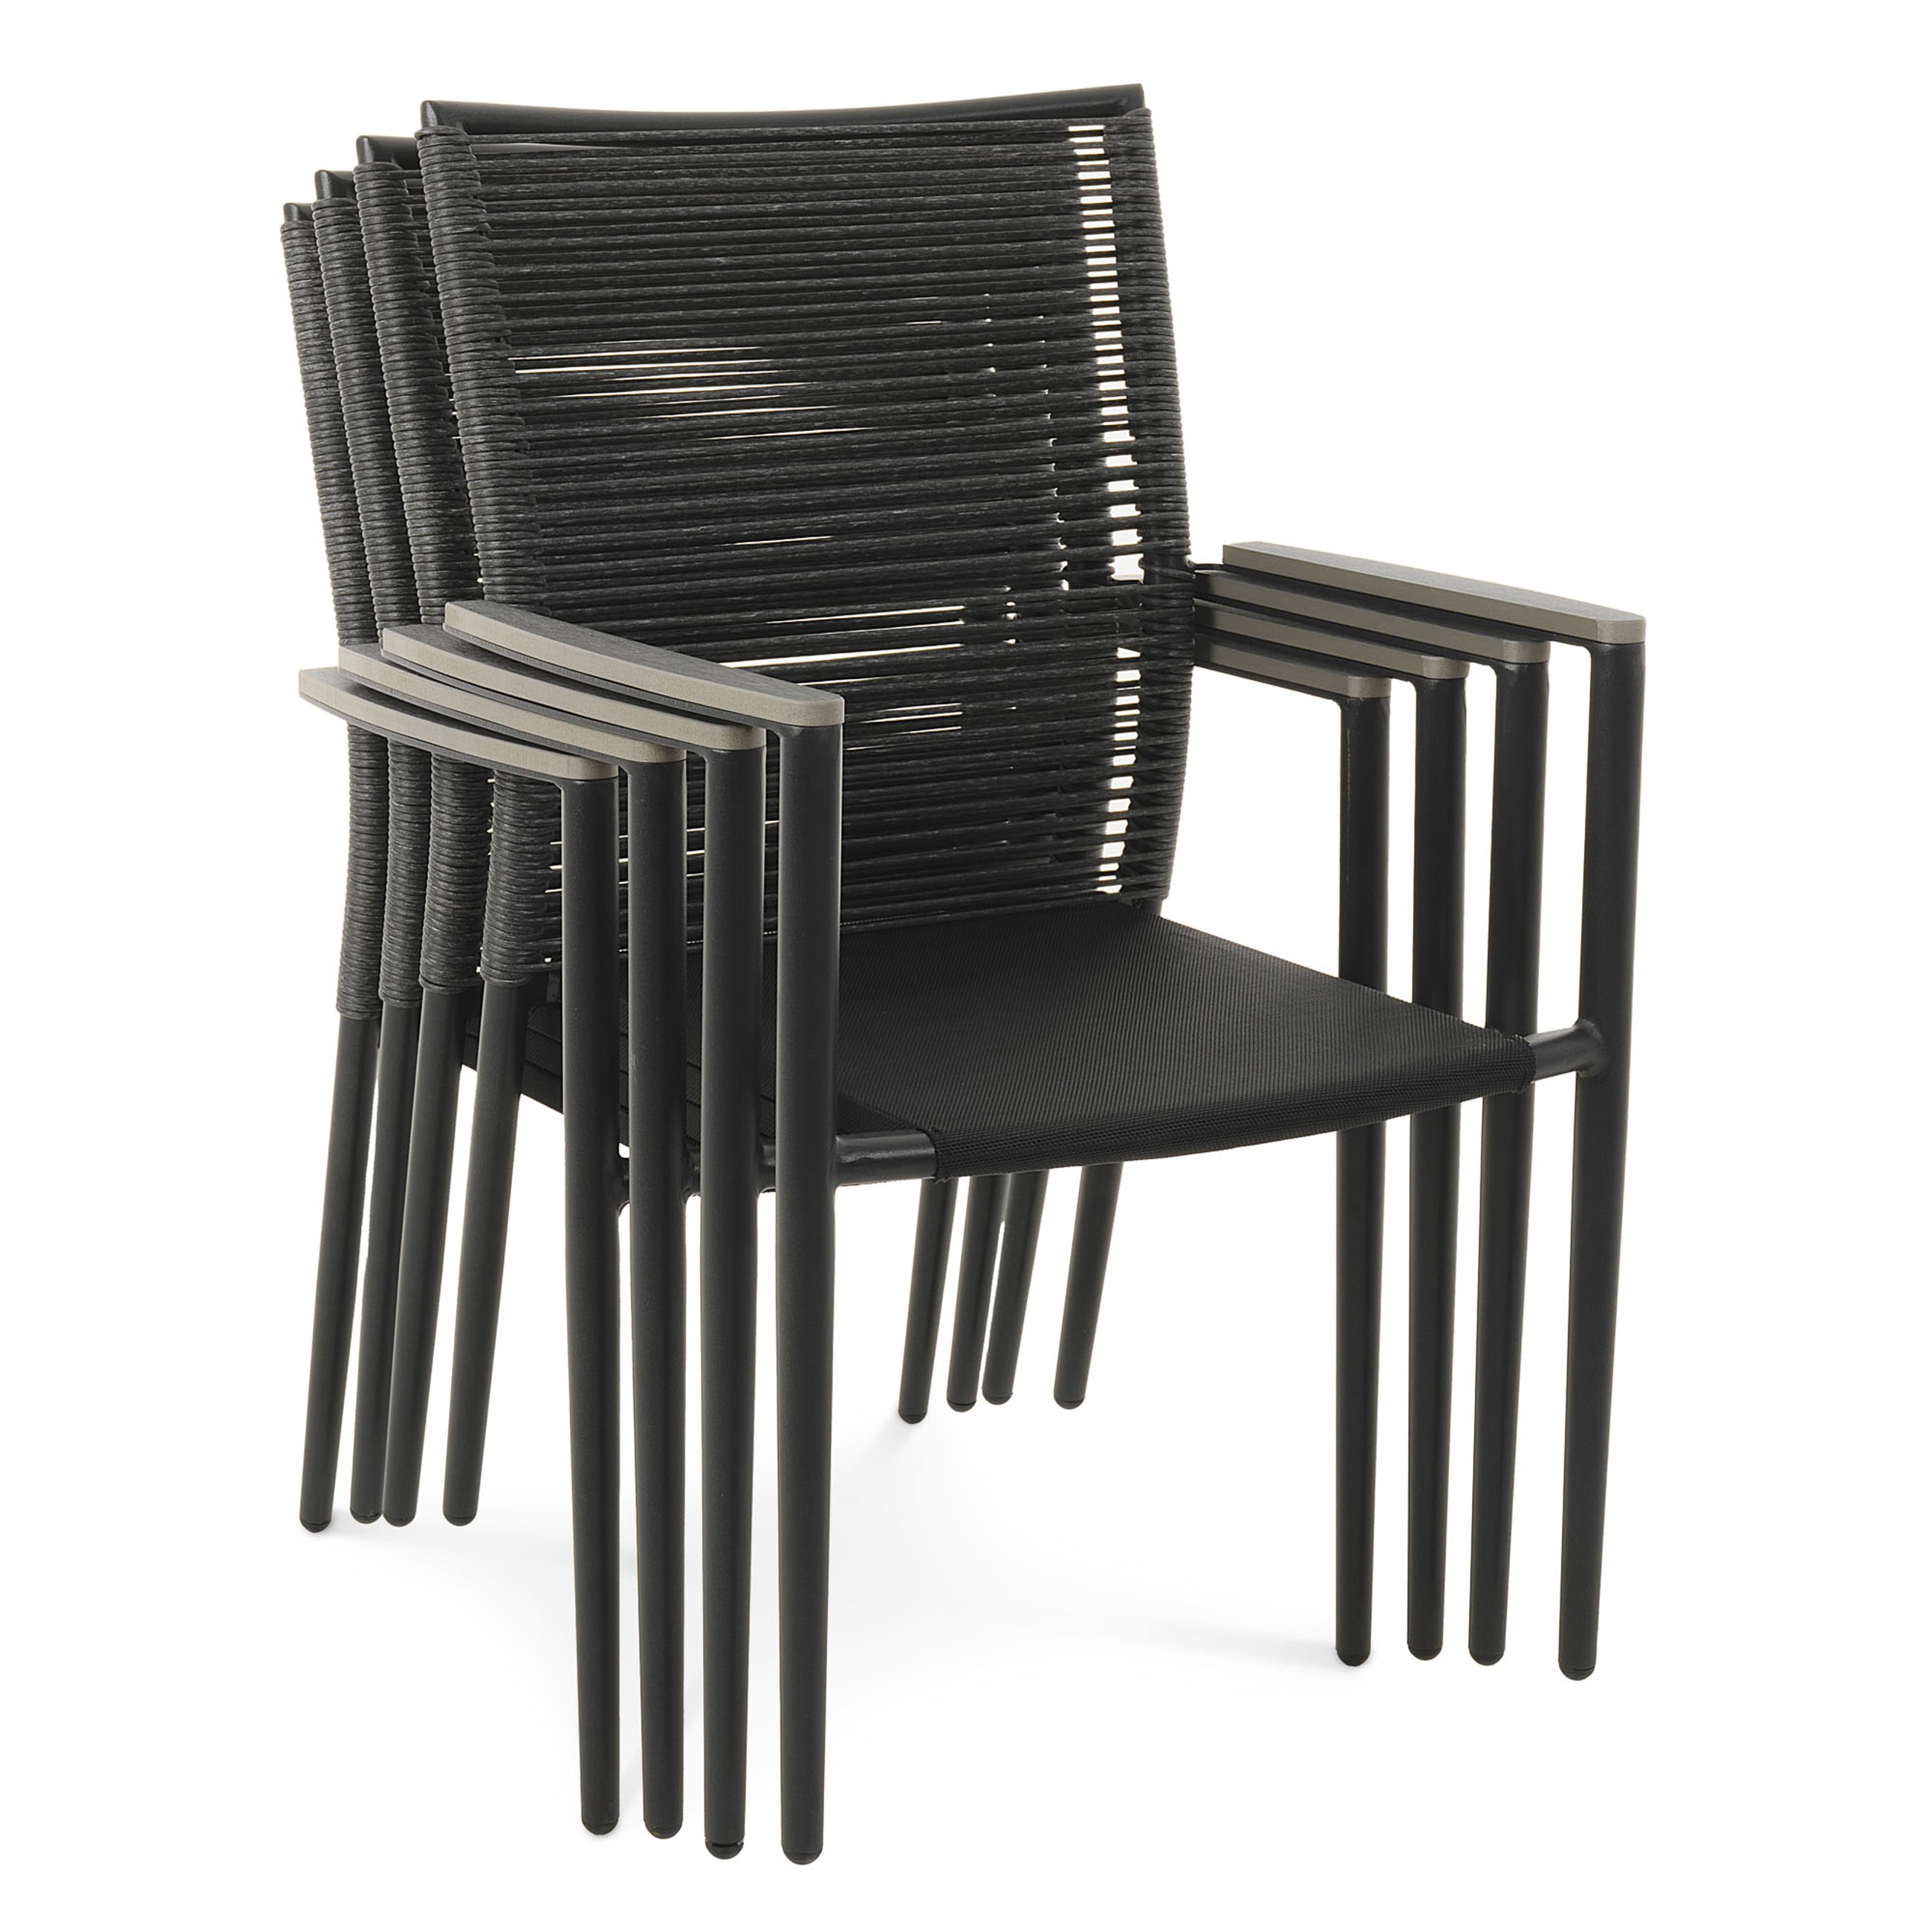 Możliwość sztaplowania krzeseł Asti szary w komplecie 4 sztuk.